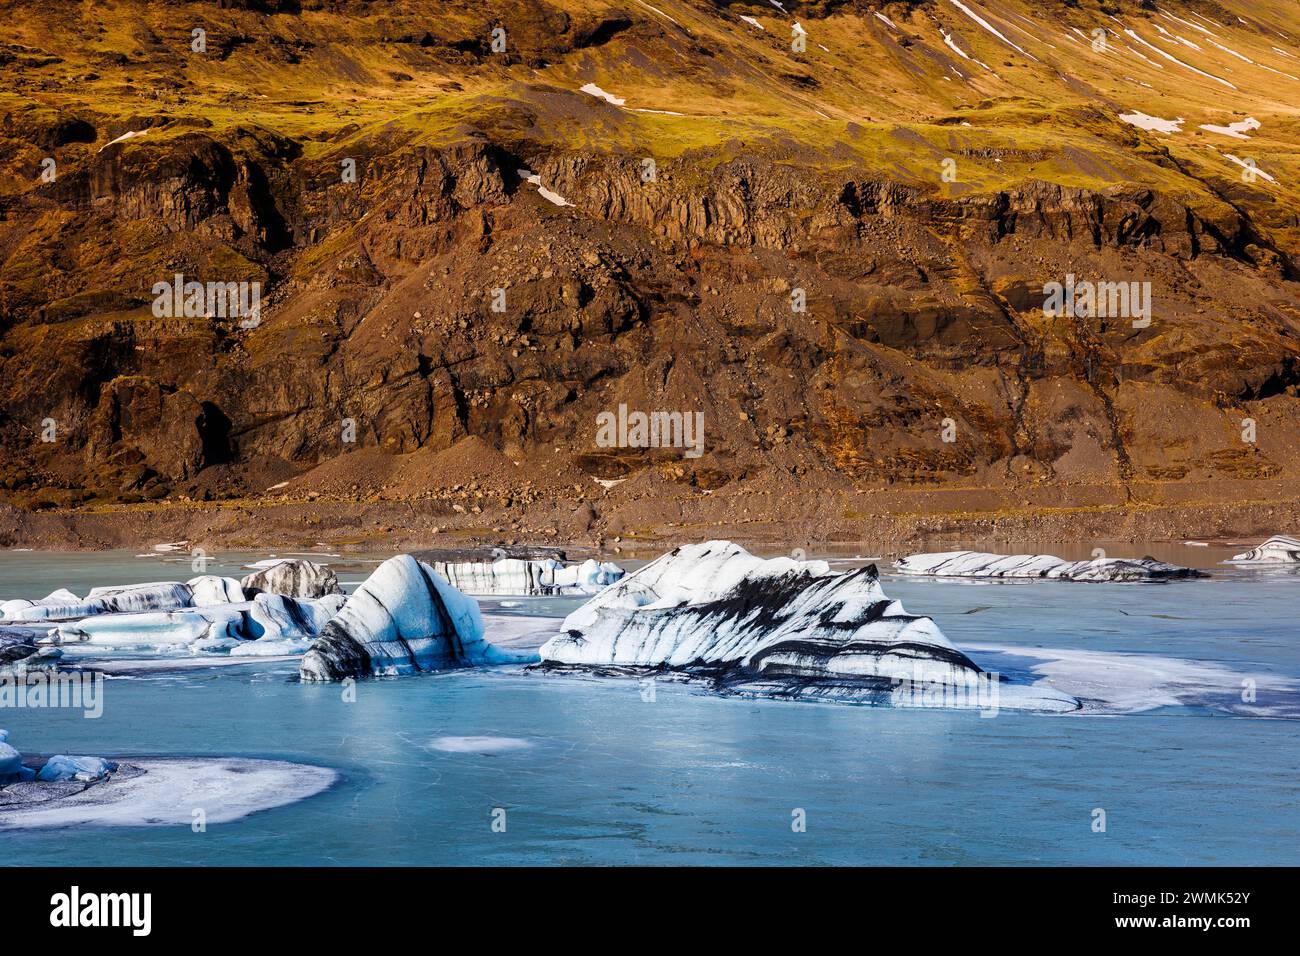 Enorme massa di ghiaccio artico vatnajokull in islanda, bellissimo e massiccio ghiacciaio colorato di bianco, blu e verde. Iceberg galleggianti ghiacciati in un paesaggio invernale ghiacciato e naturale. Foto Stock